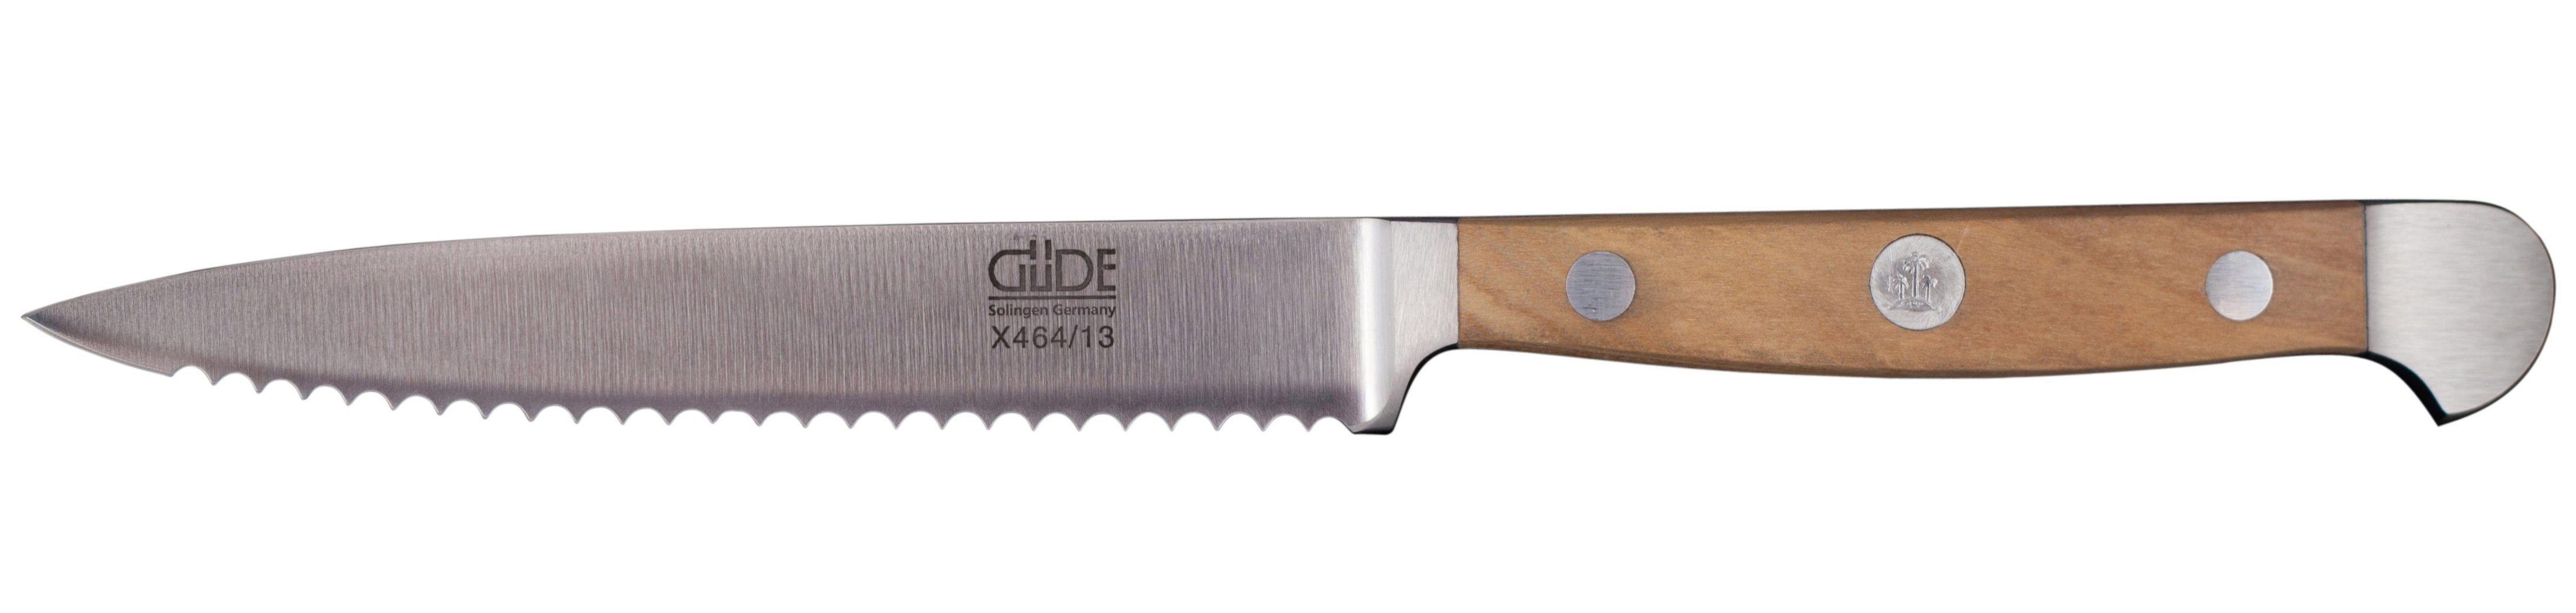 Güde Alpha Olive Tomatenmesser 13 cm mit Wellenschliff / CVM-Messerstahl mit Griffschalen aus Olivenholz